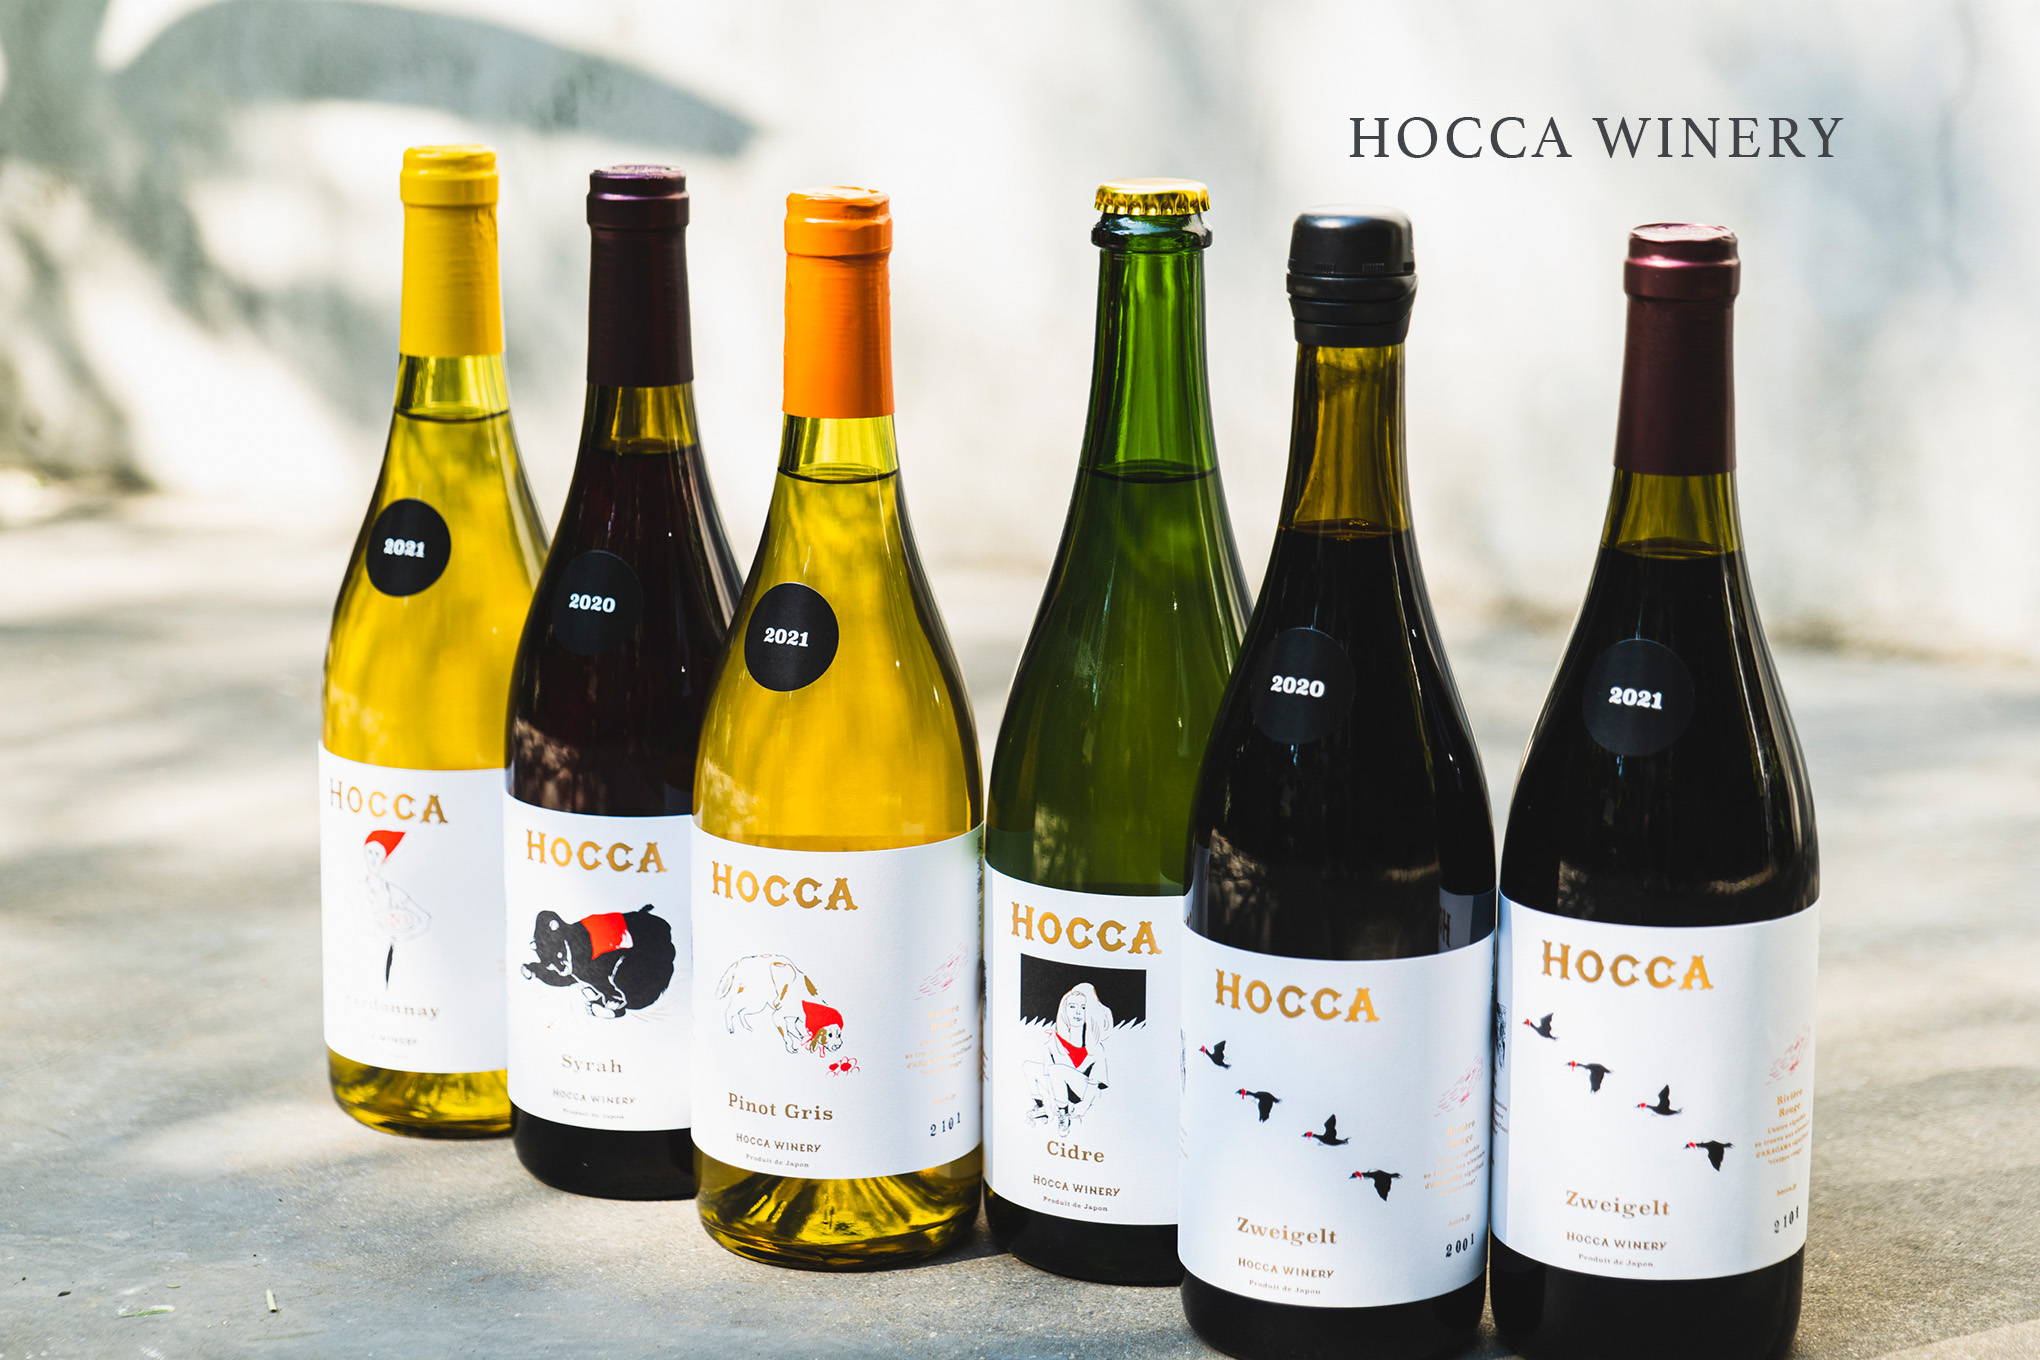 全国でも珍しい、日本酒の杜氏が自ら仕込むワイン。日本酒の蔵元が造ったワイナリー『HOCCA WINERY』。